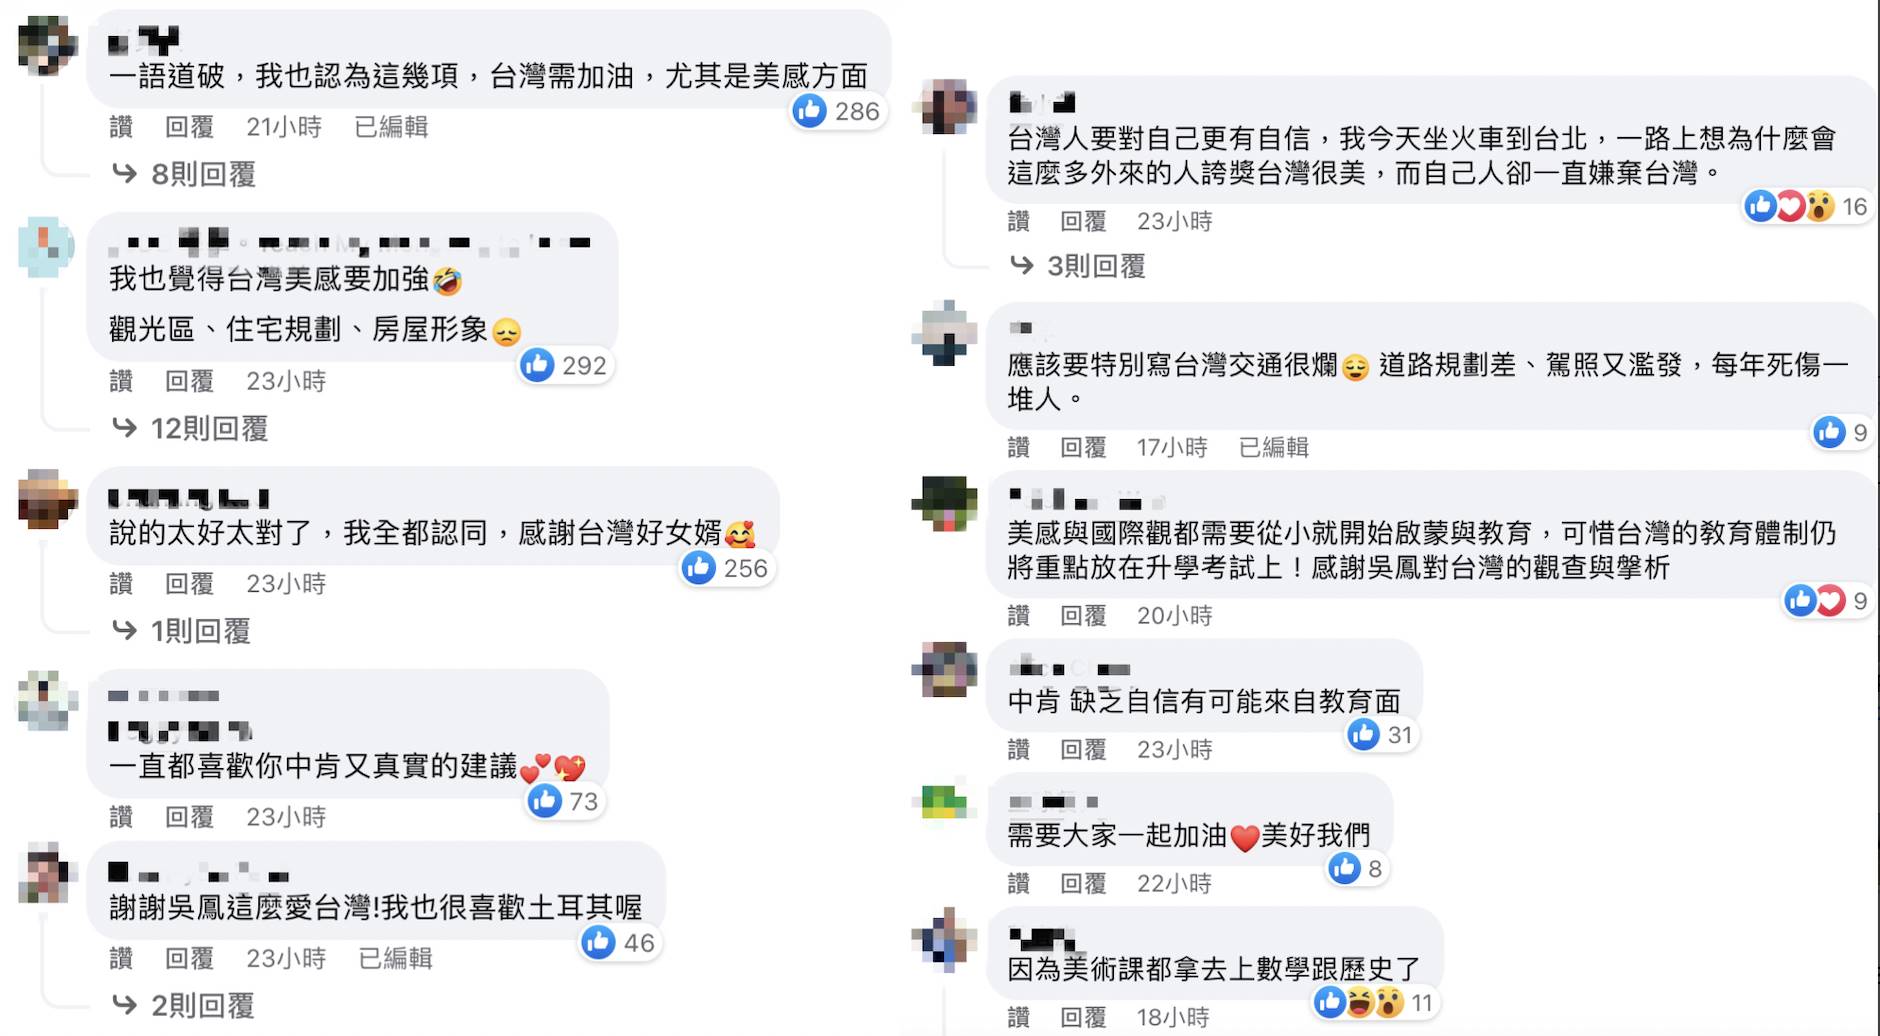 網友對於吳鳳認為台灣需要改進的地方留言討論